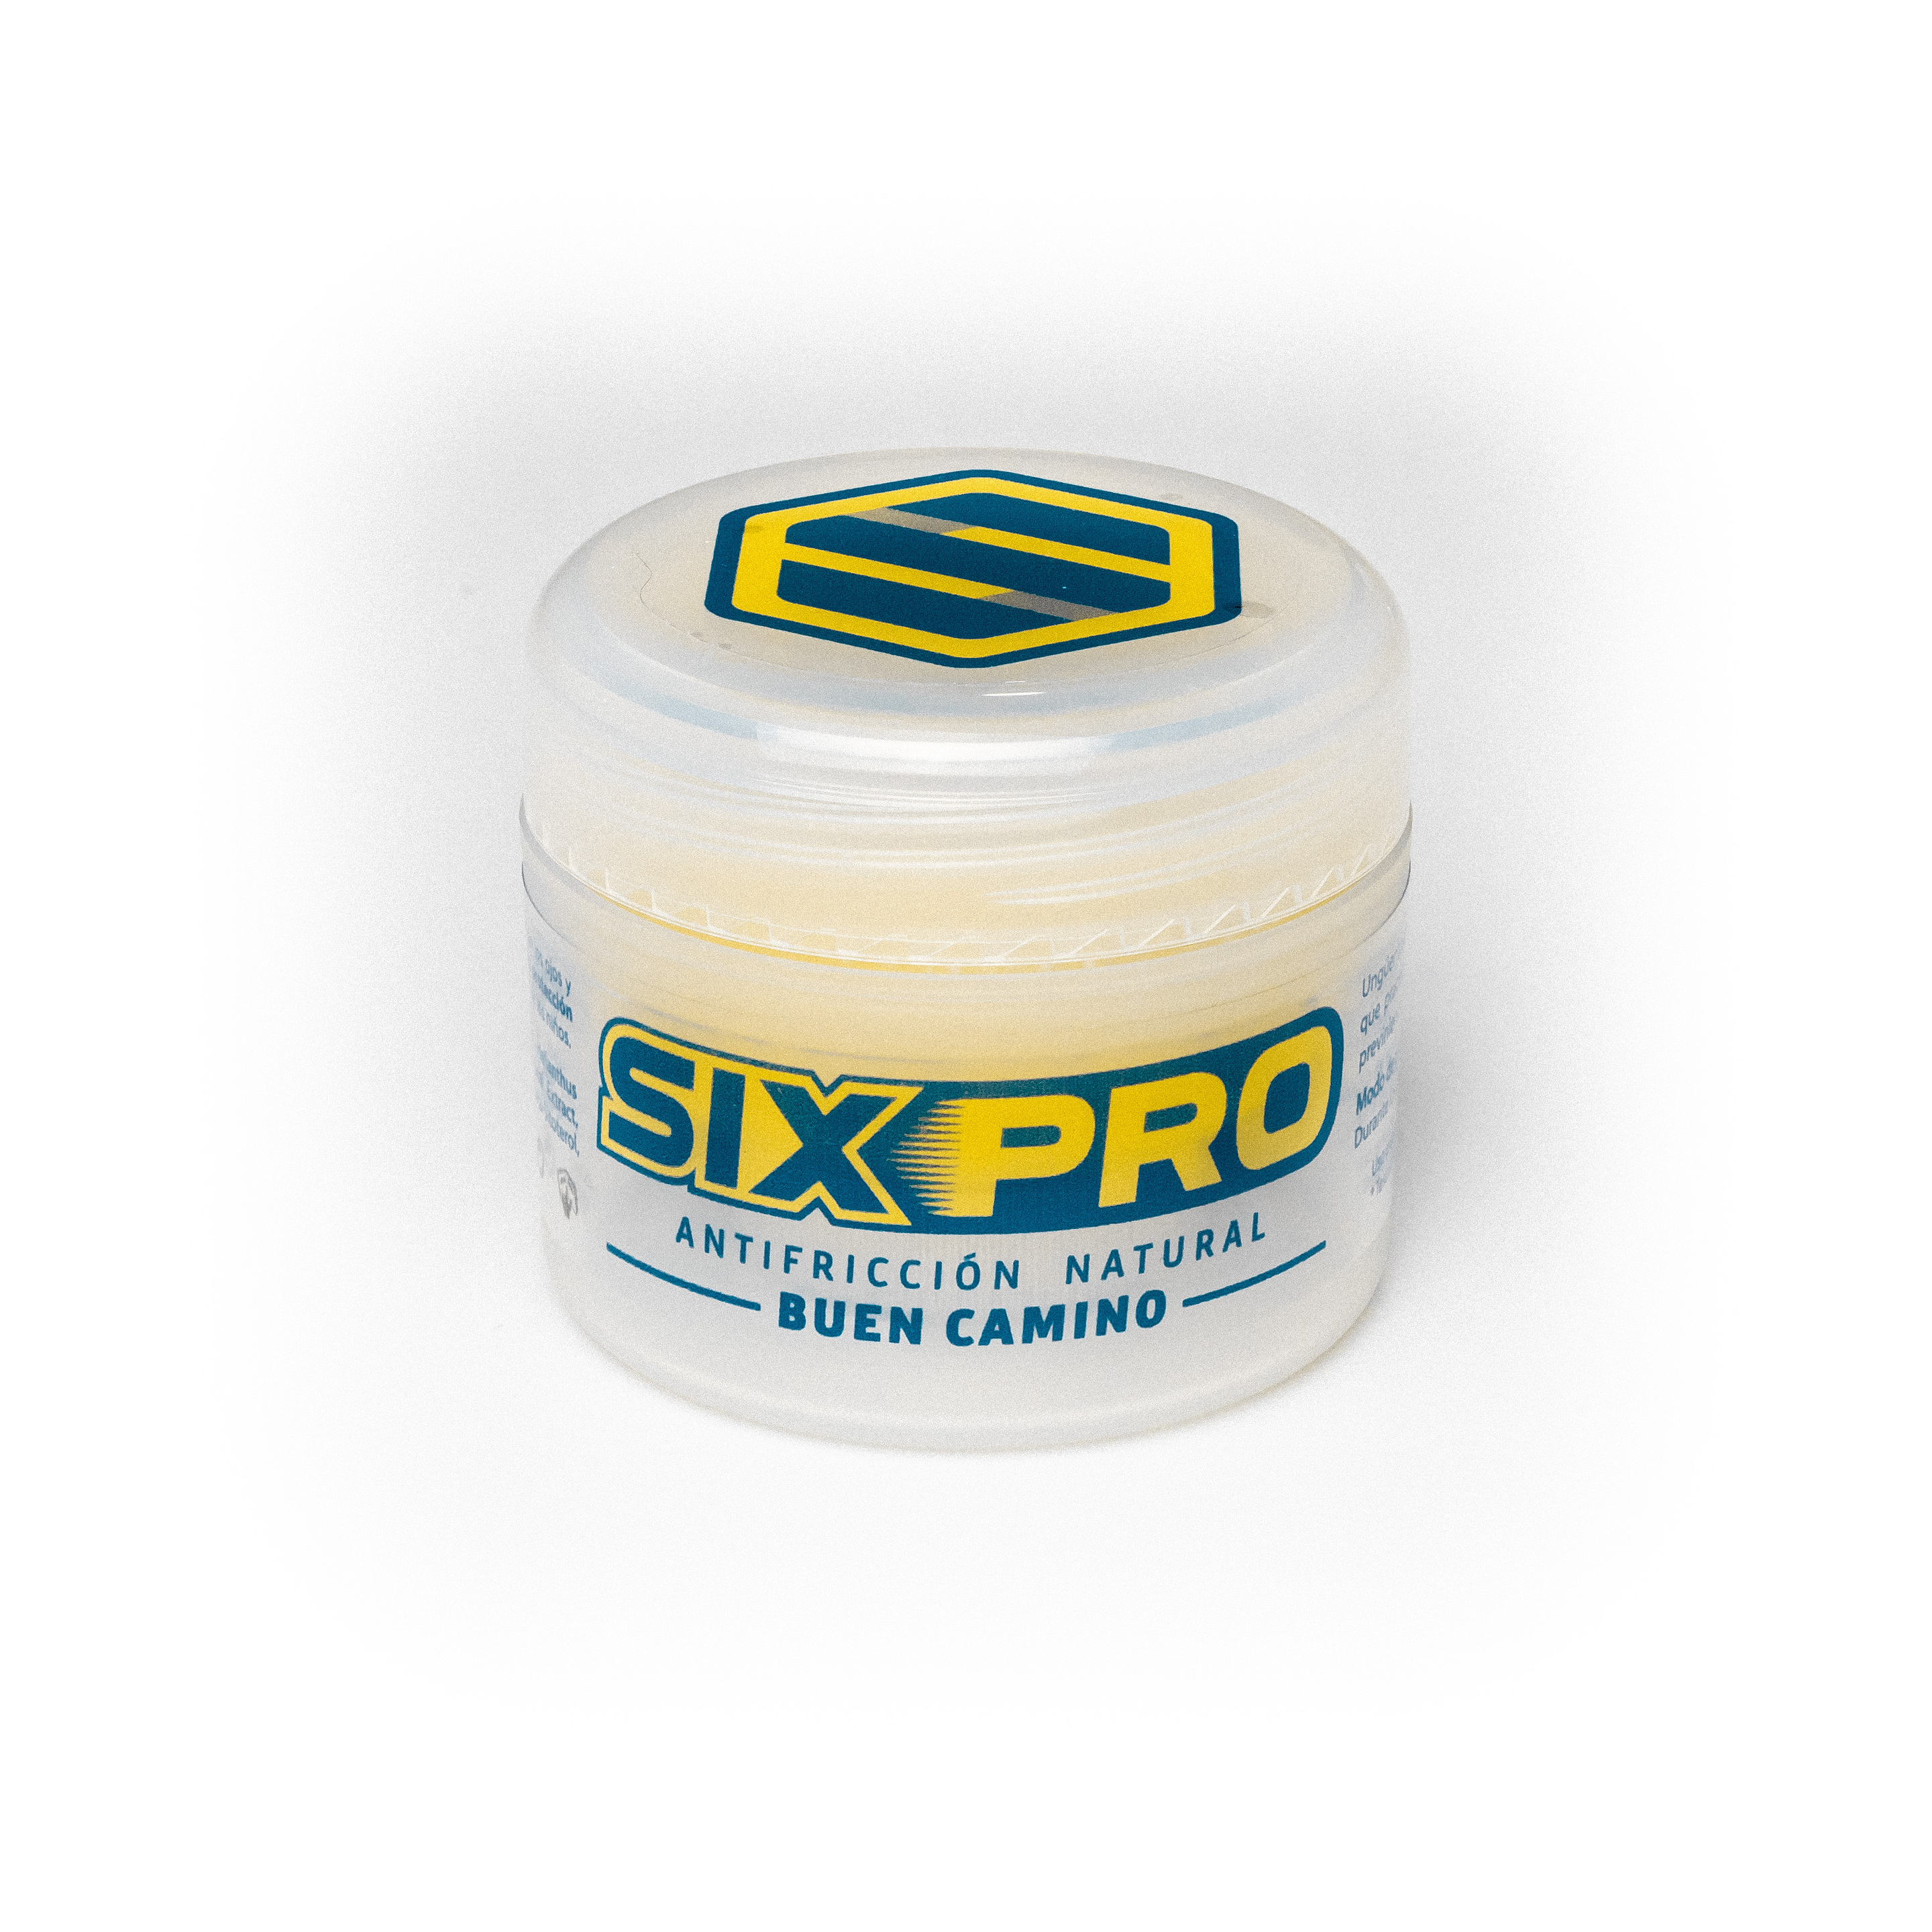 Crema Antifricción Natural Sixpro Buen Camino - amarillo-azul - 